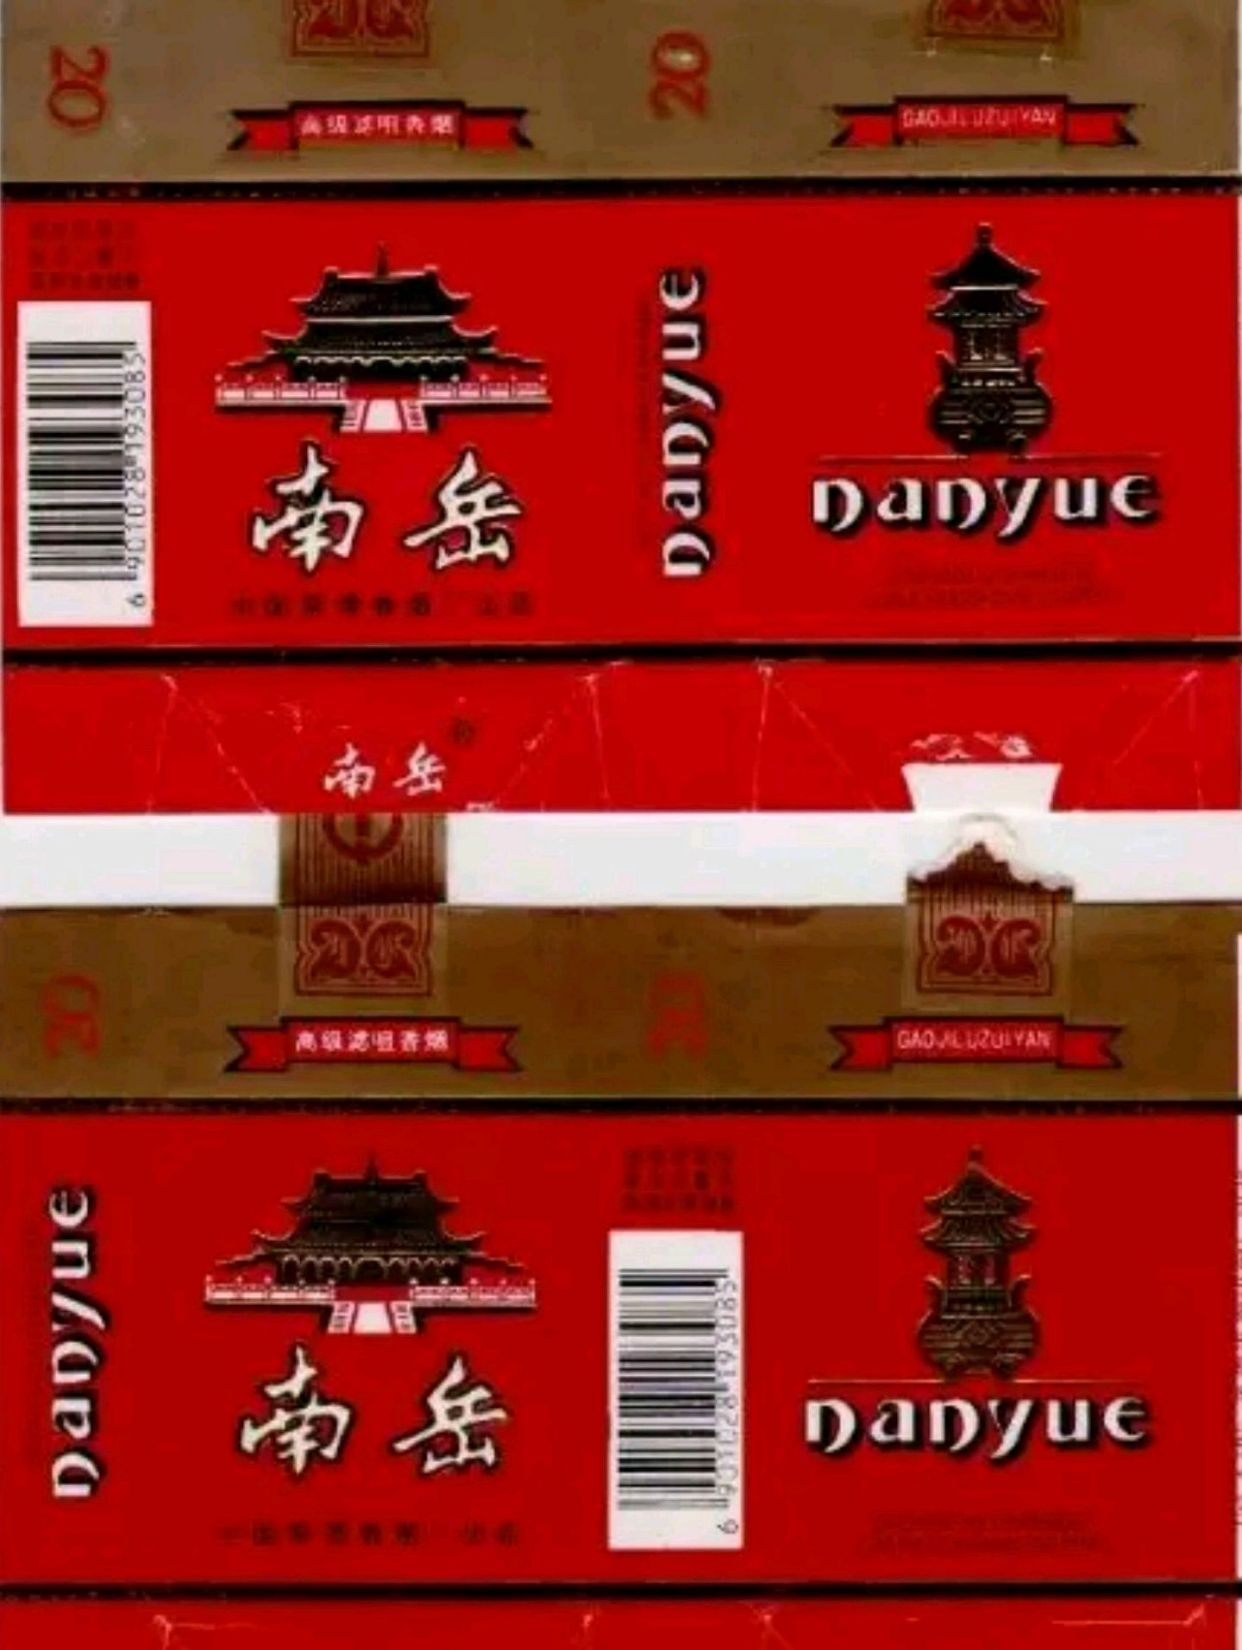 80年代湖南产的17种香烟品牌,你见过哪几款